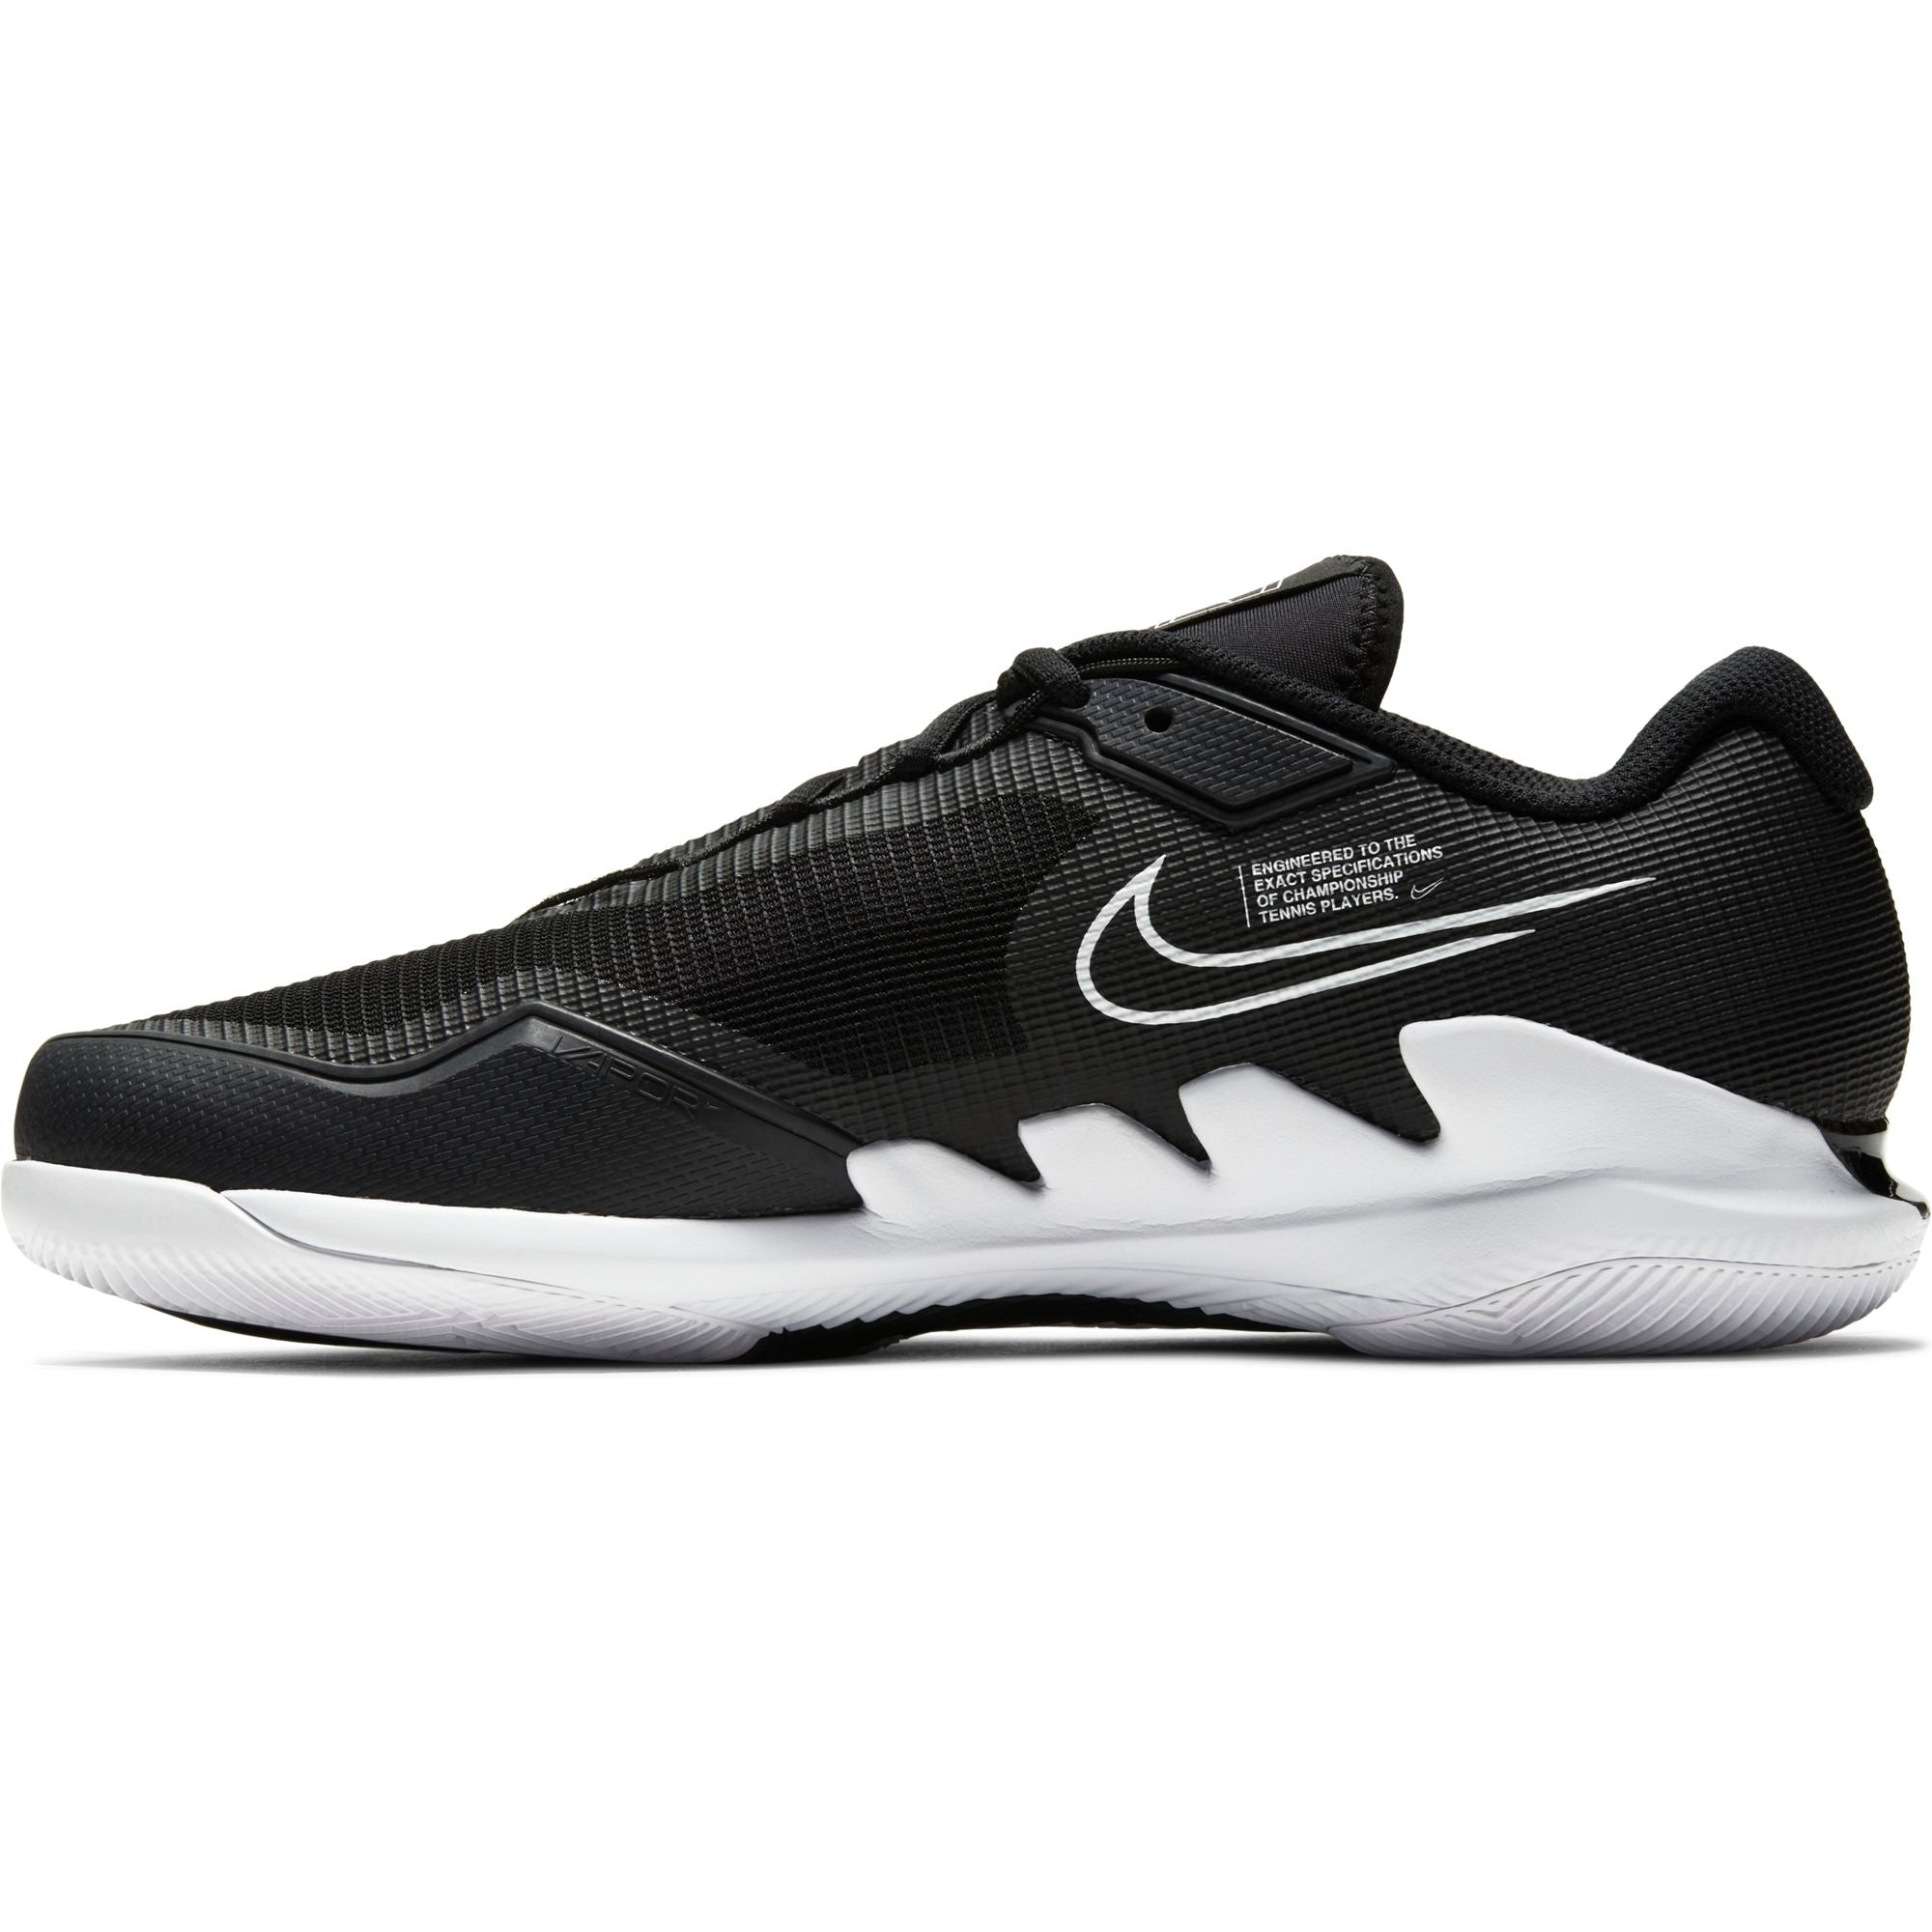 Mens Court Air Zoom Vapor Pro Tennis Shoe